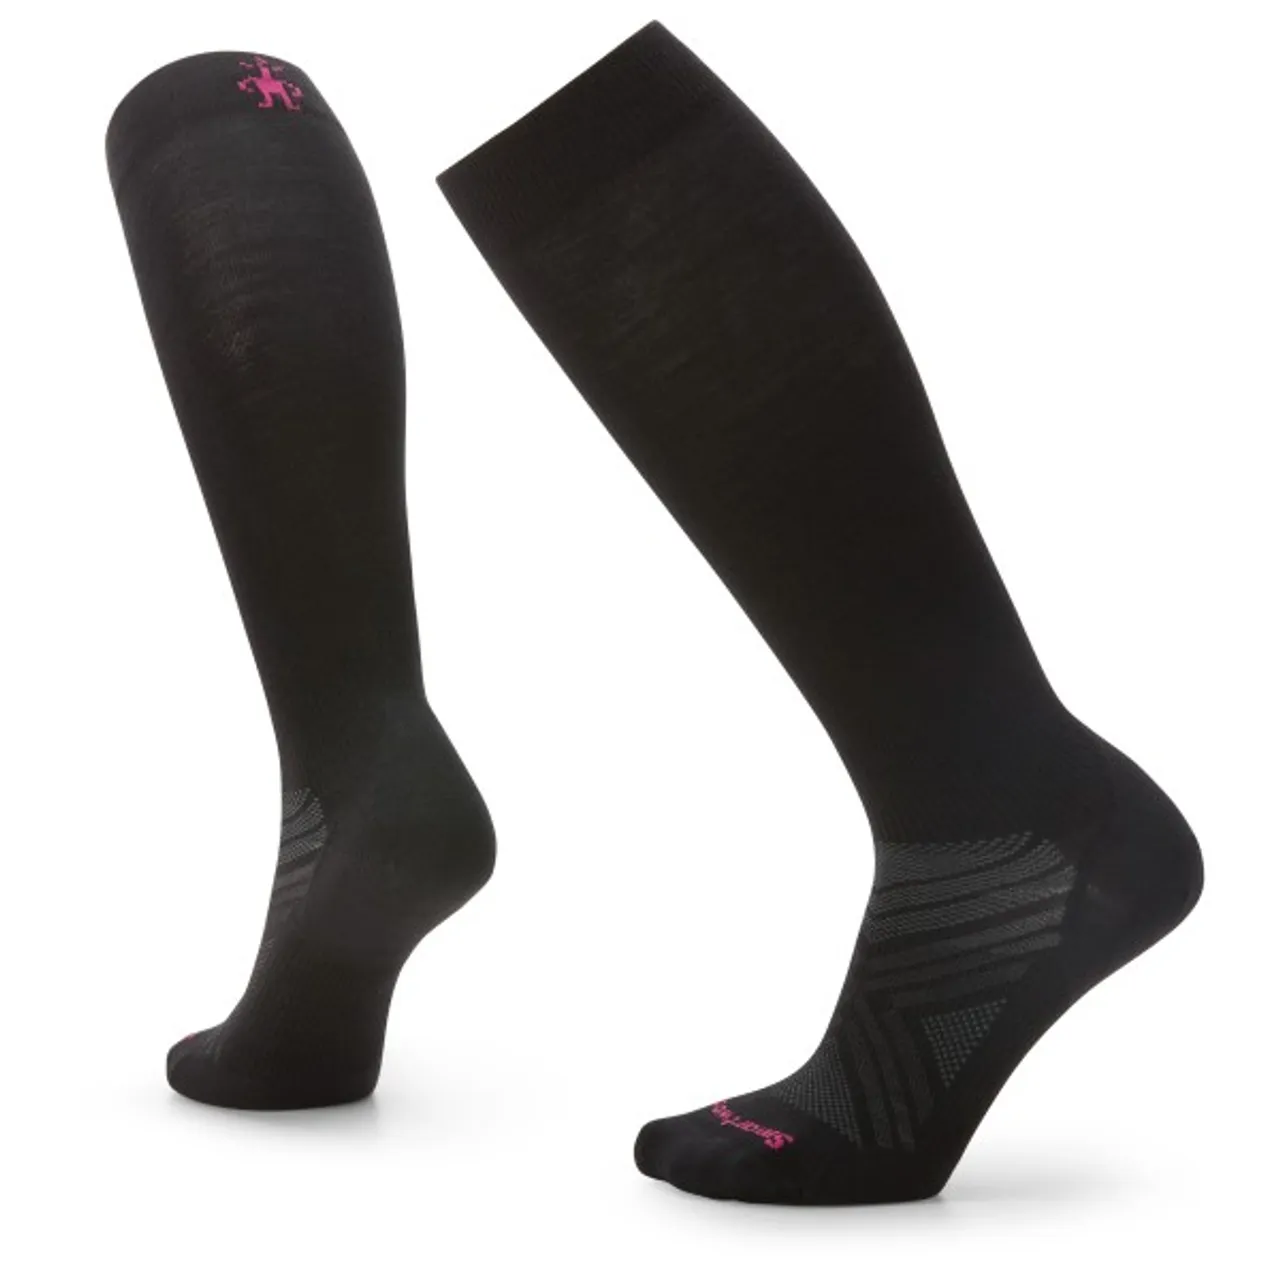 Smartwool - Women's Ski Zero Cushion OTC - Ski socks